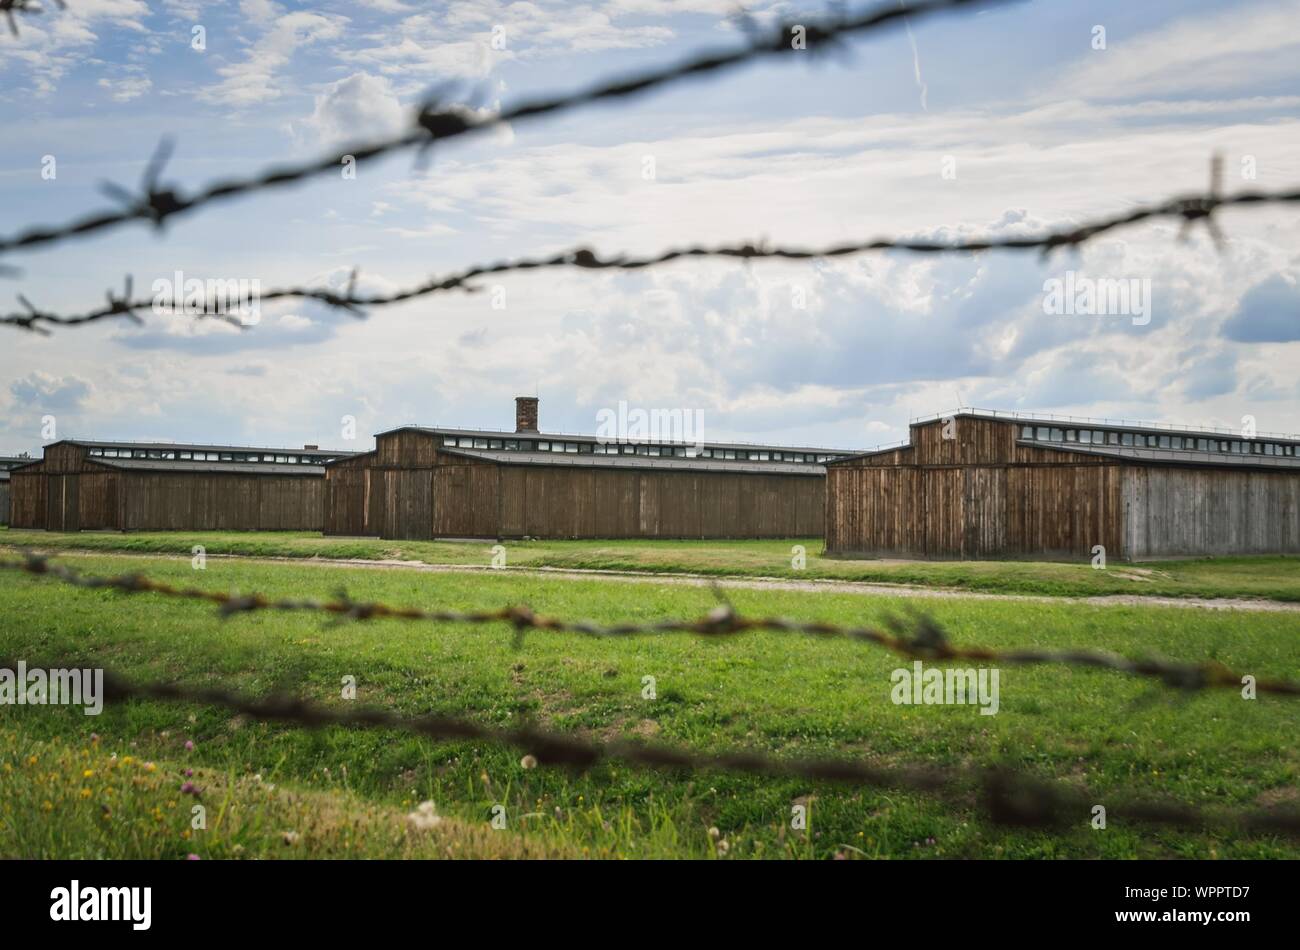 OSWIECIM, Pologne - 17 août 2019 : Les bâtiments dans le camp de concentration Auschwitz Birkenau à Oswiecim, Pologne. Banque D'Images